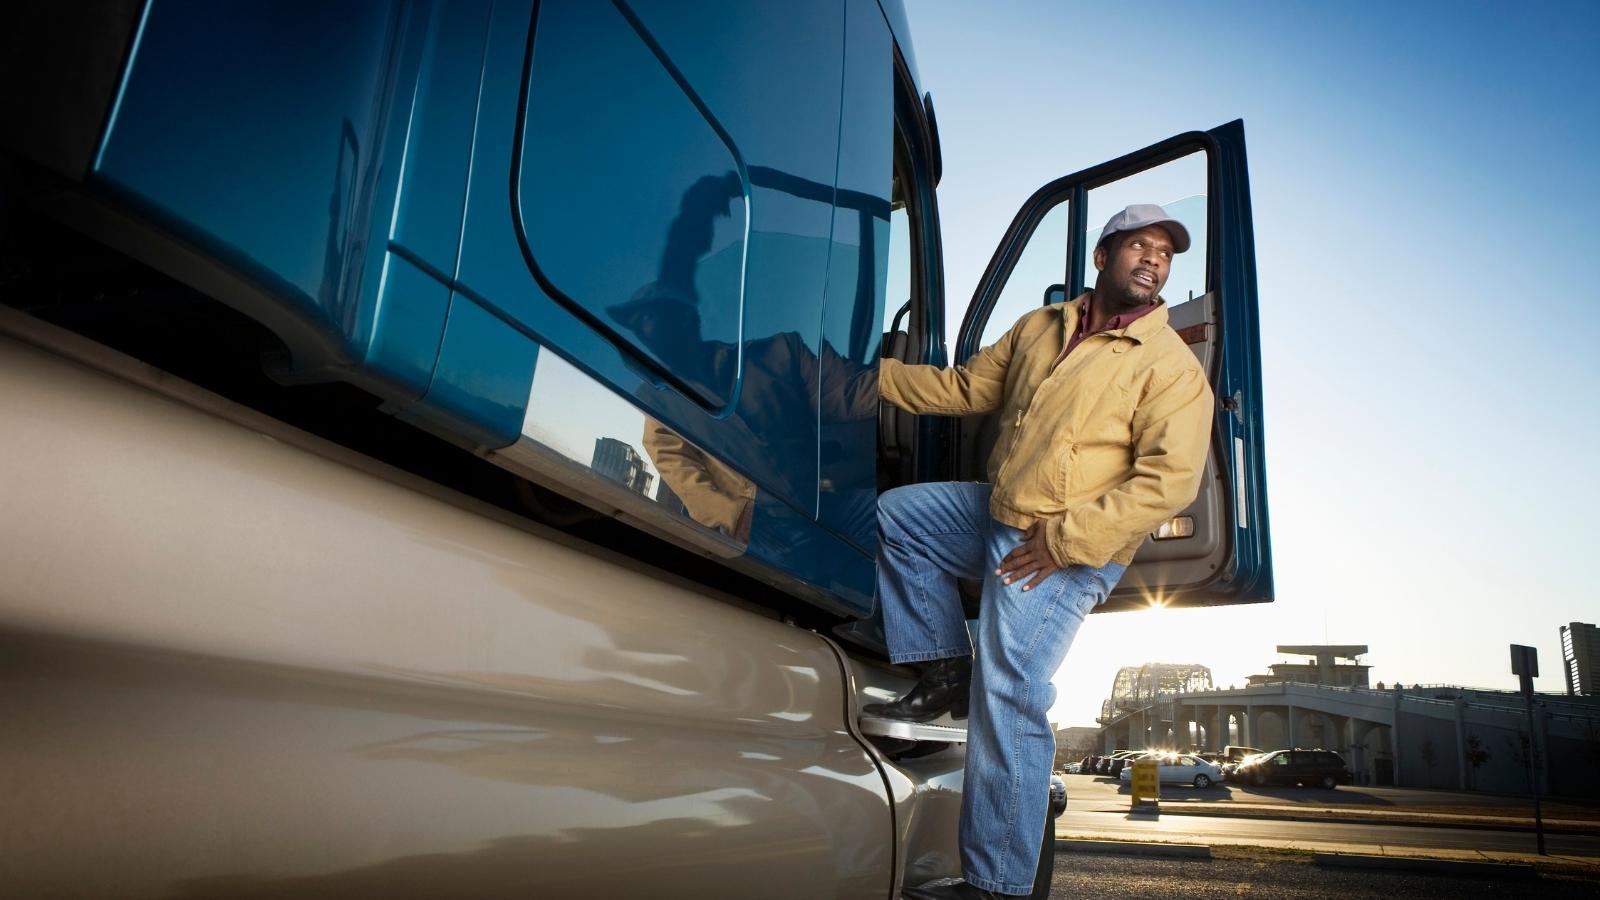 Il camionista americano - Capire i propri sogni - Kaya